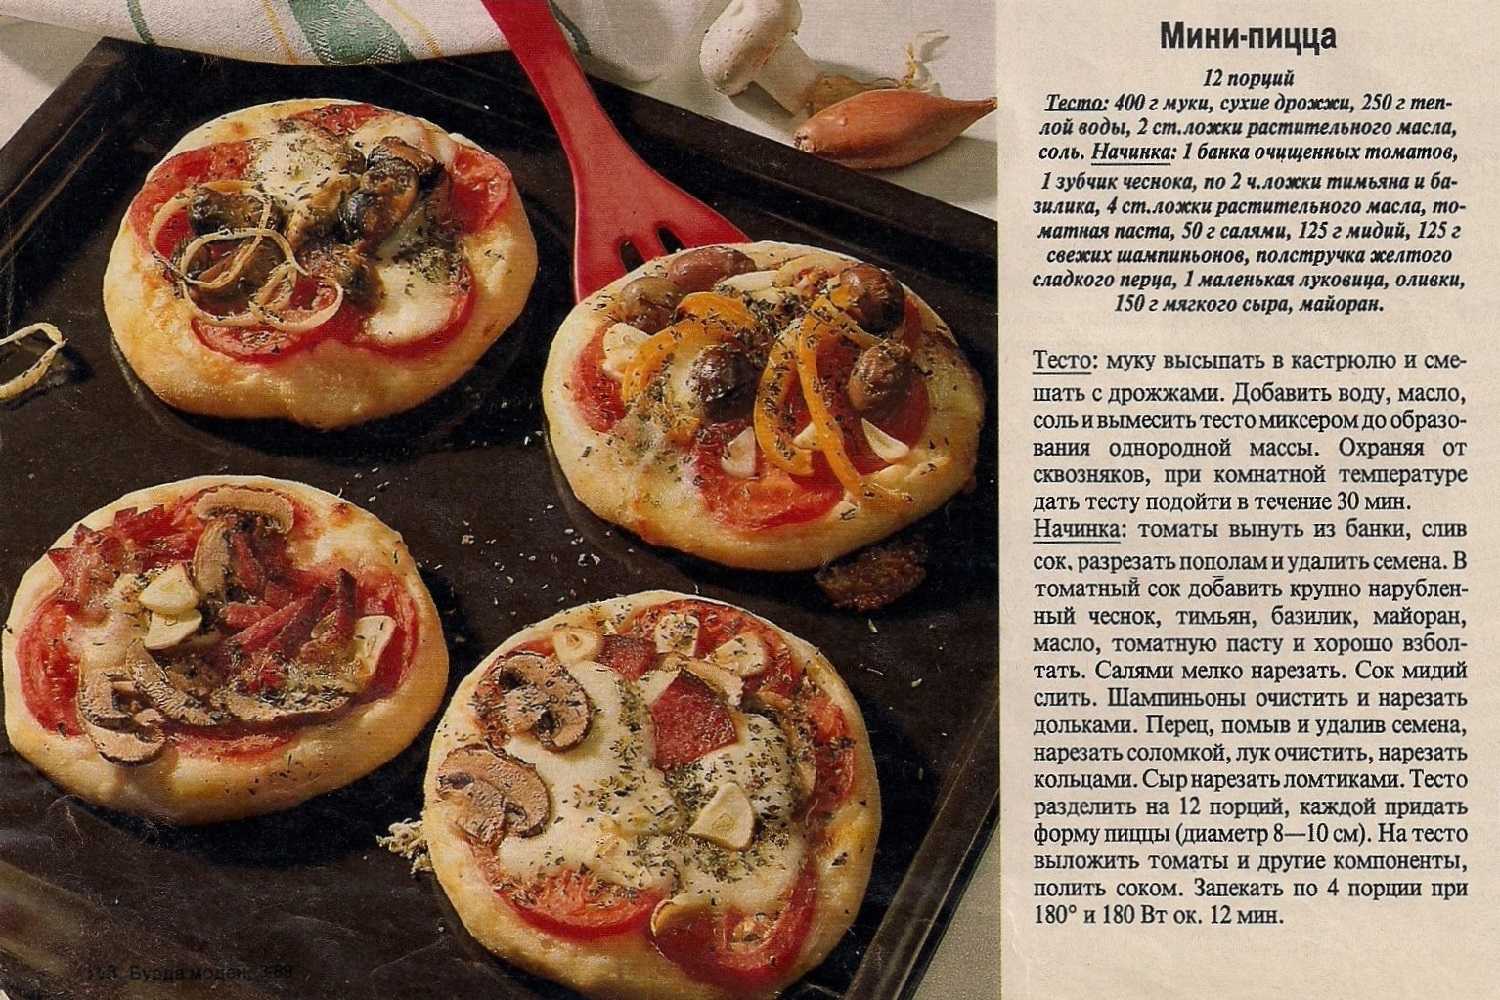 тесто для пиццы дрожжевое и начинка для пиццы в домашних условиях фото 15